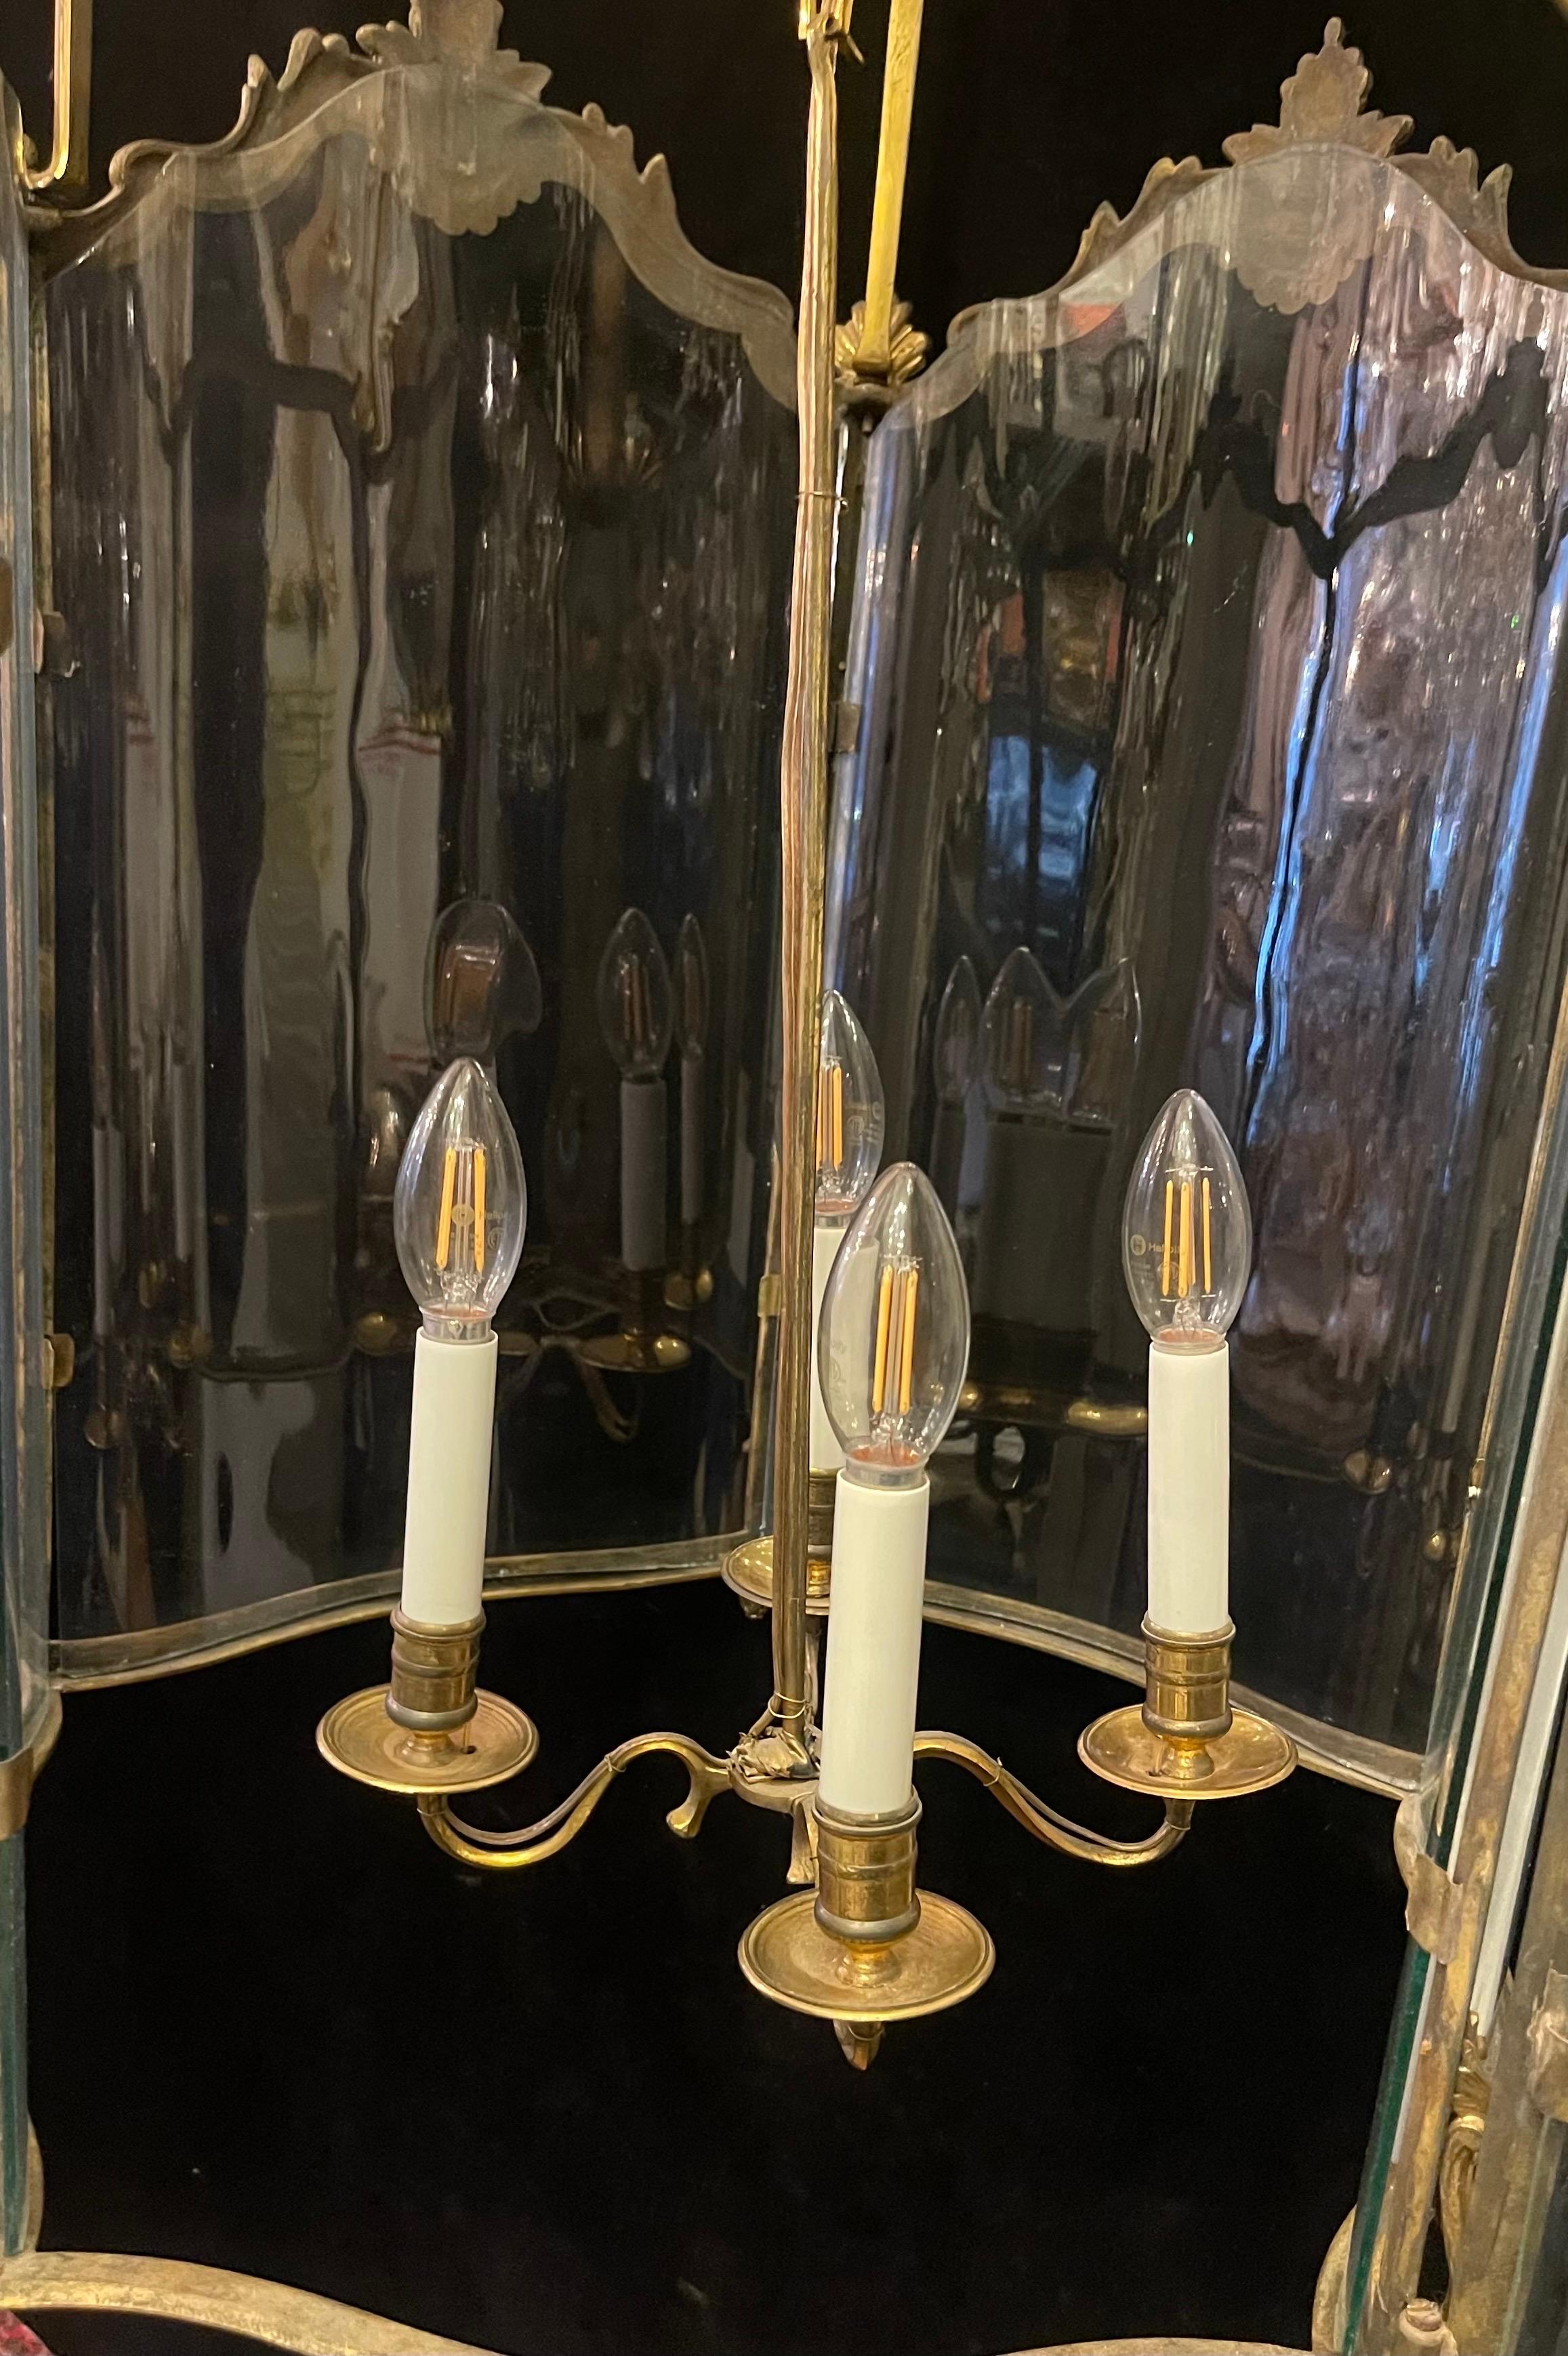 Eine wunderbare große Französisch Dore Bronze Rokoko Louis XV Stil mit Original gebogen / geblasenem Glas 4 Kandelaber Licht Laterne Kronleuchter Fixture

Kürzlich neu verdrahtet und mit Kette und Vordach ausgestattet